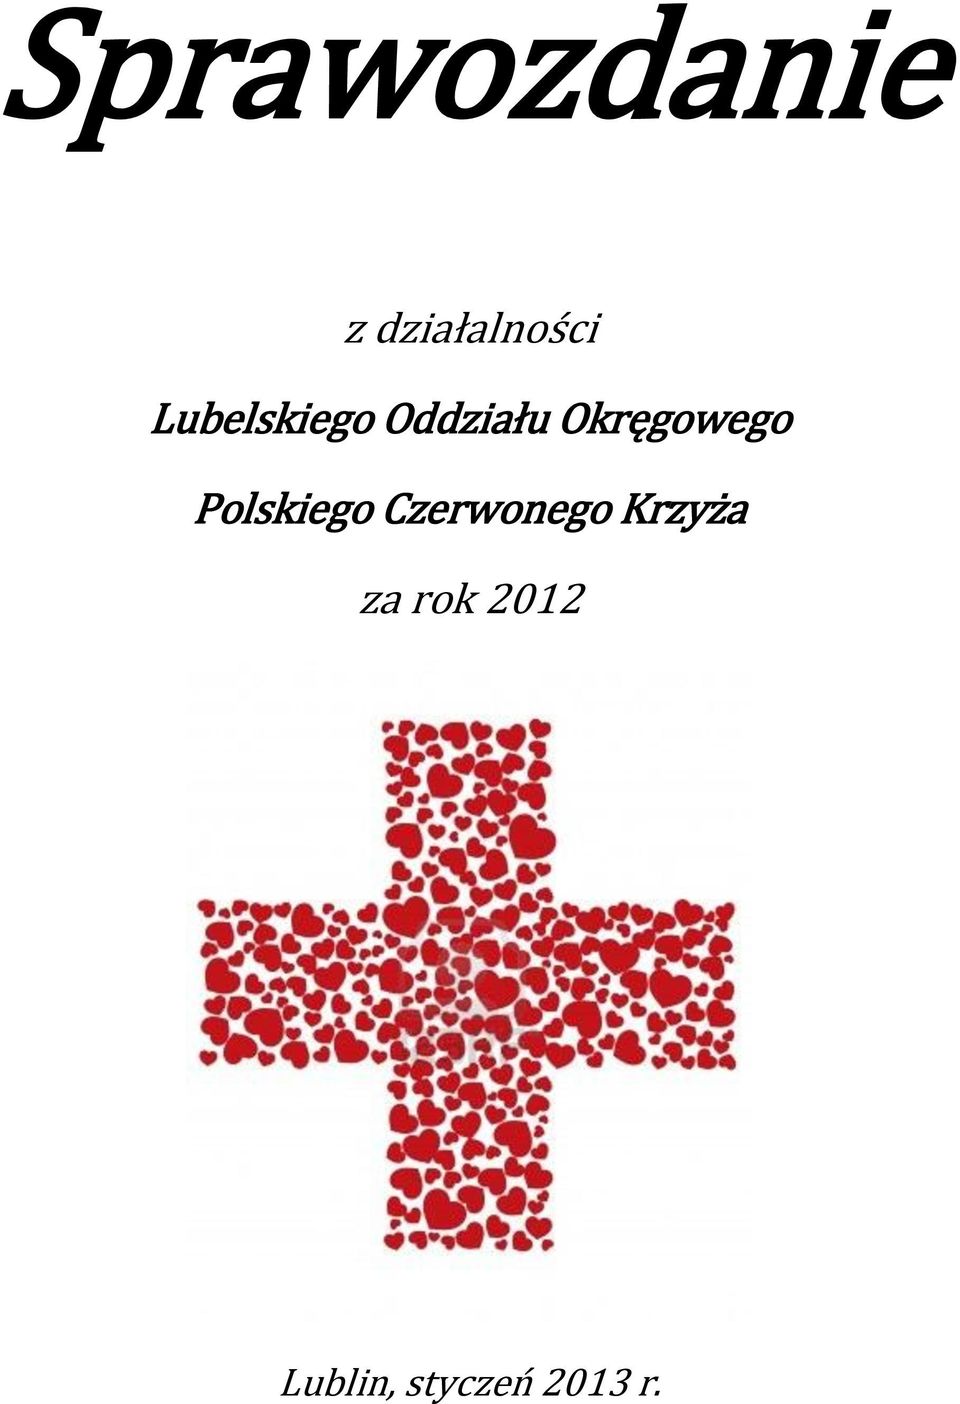 Polskiego Czerwonego Krzyża